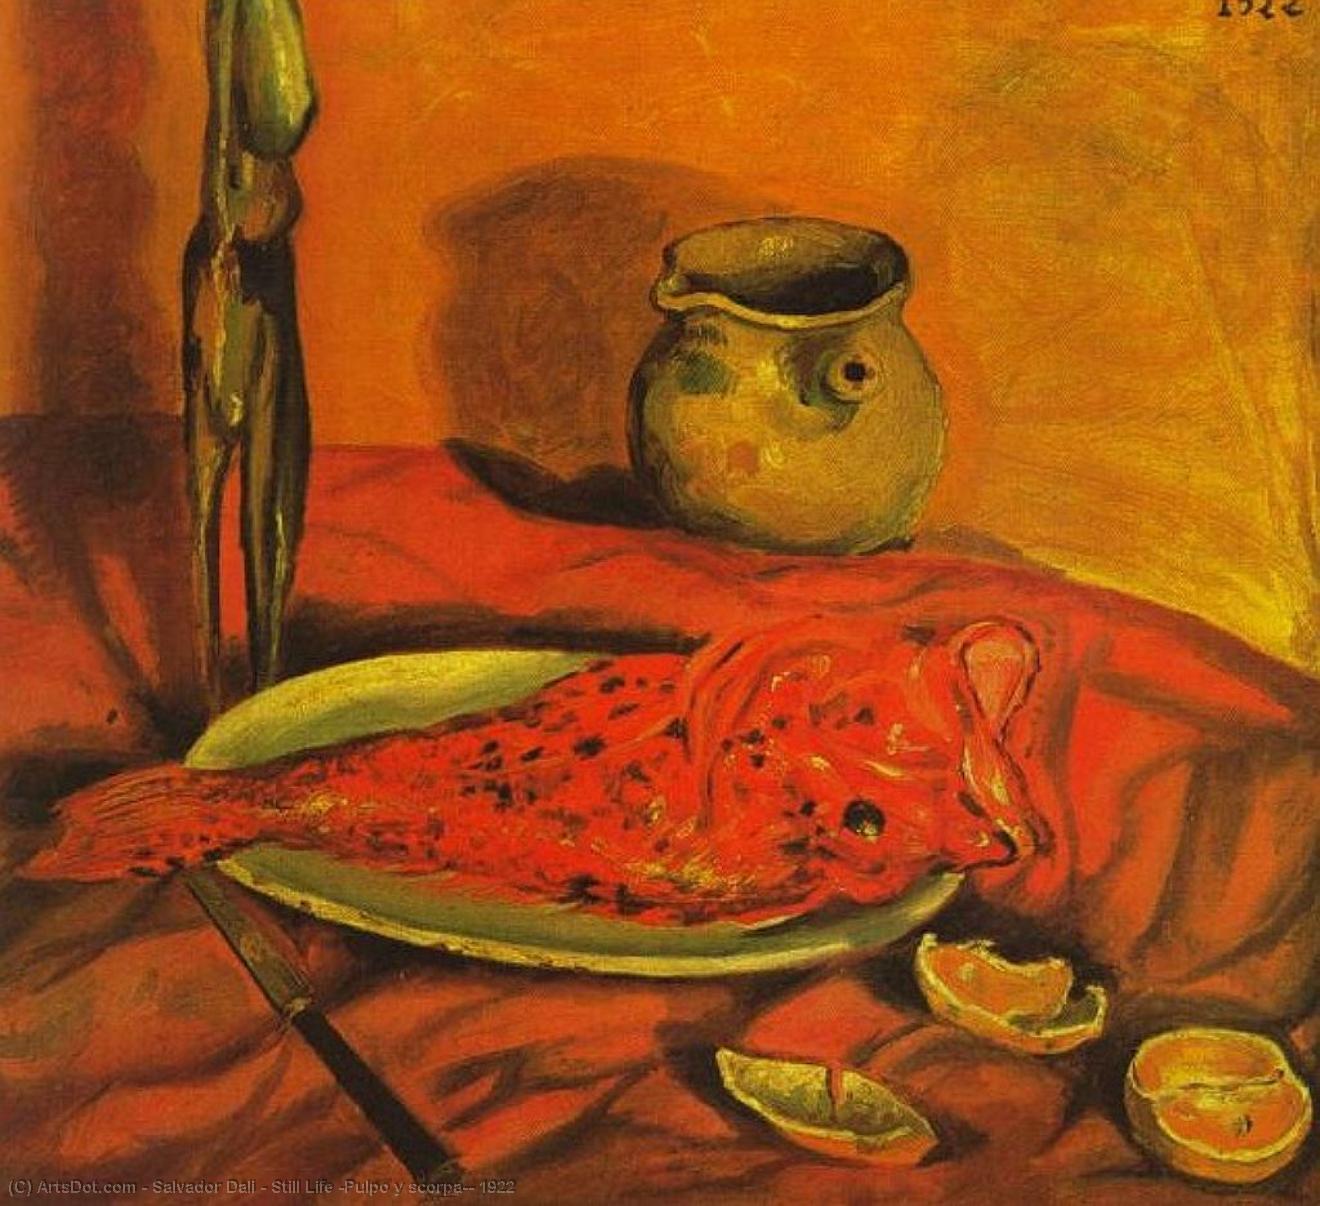 Wikoo.org - موسوعة الفنون الجميلة - اللوحة، العمل الفني Salvador Dali - Still Life (Pulpo y scorpa), 1922